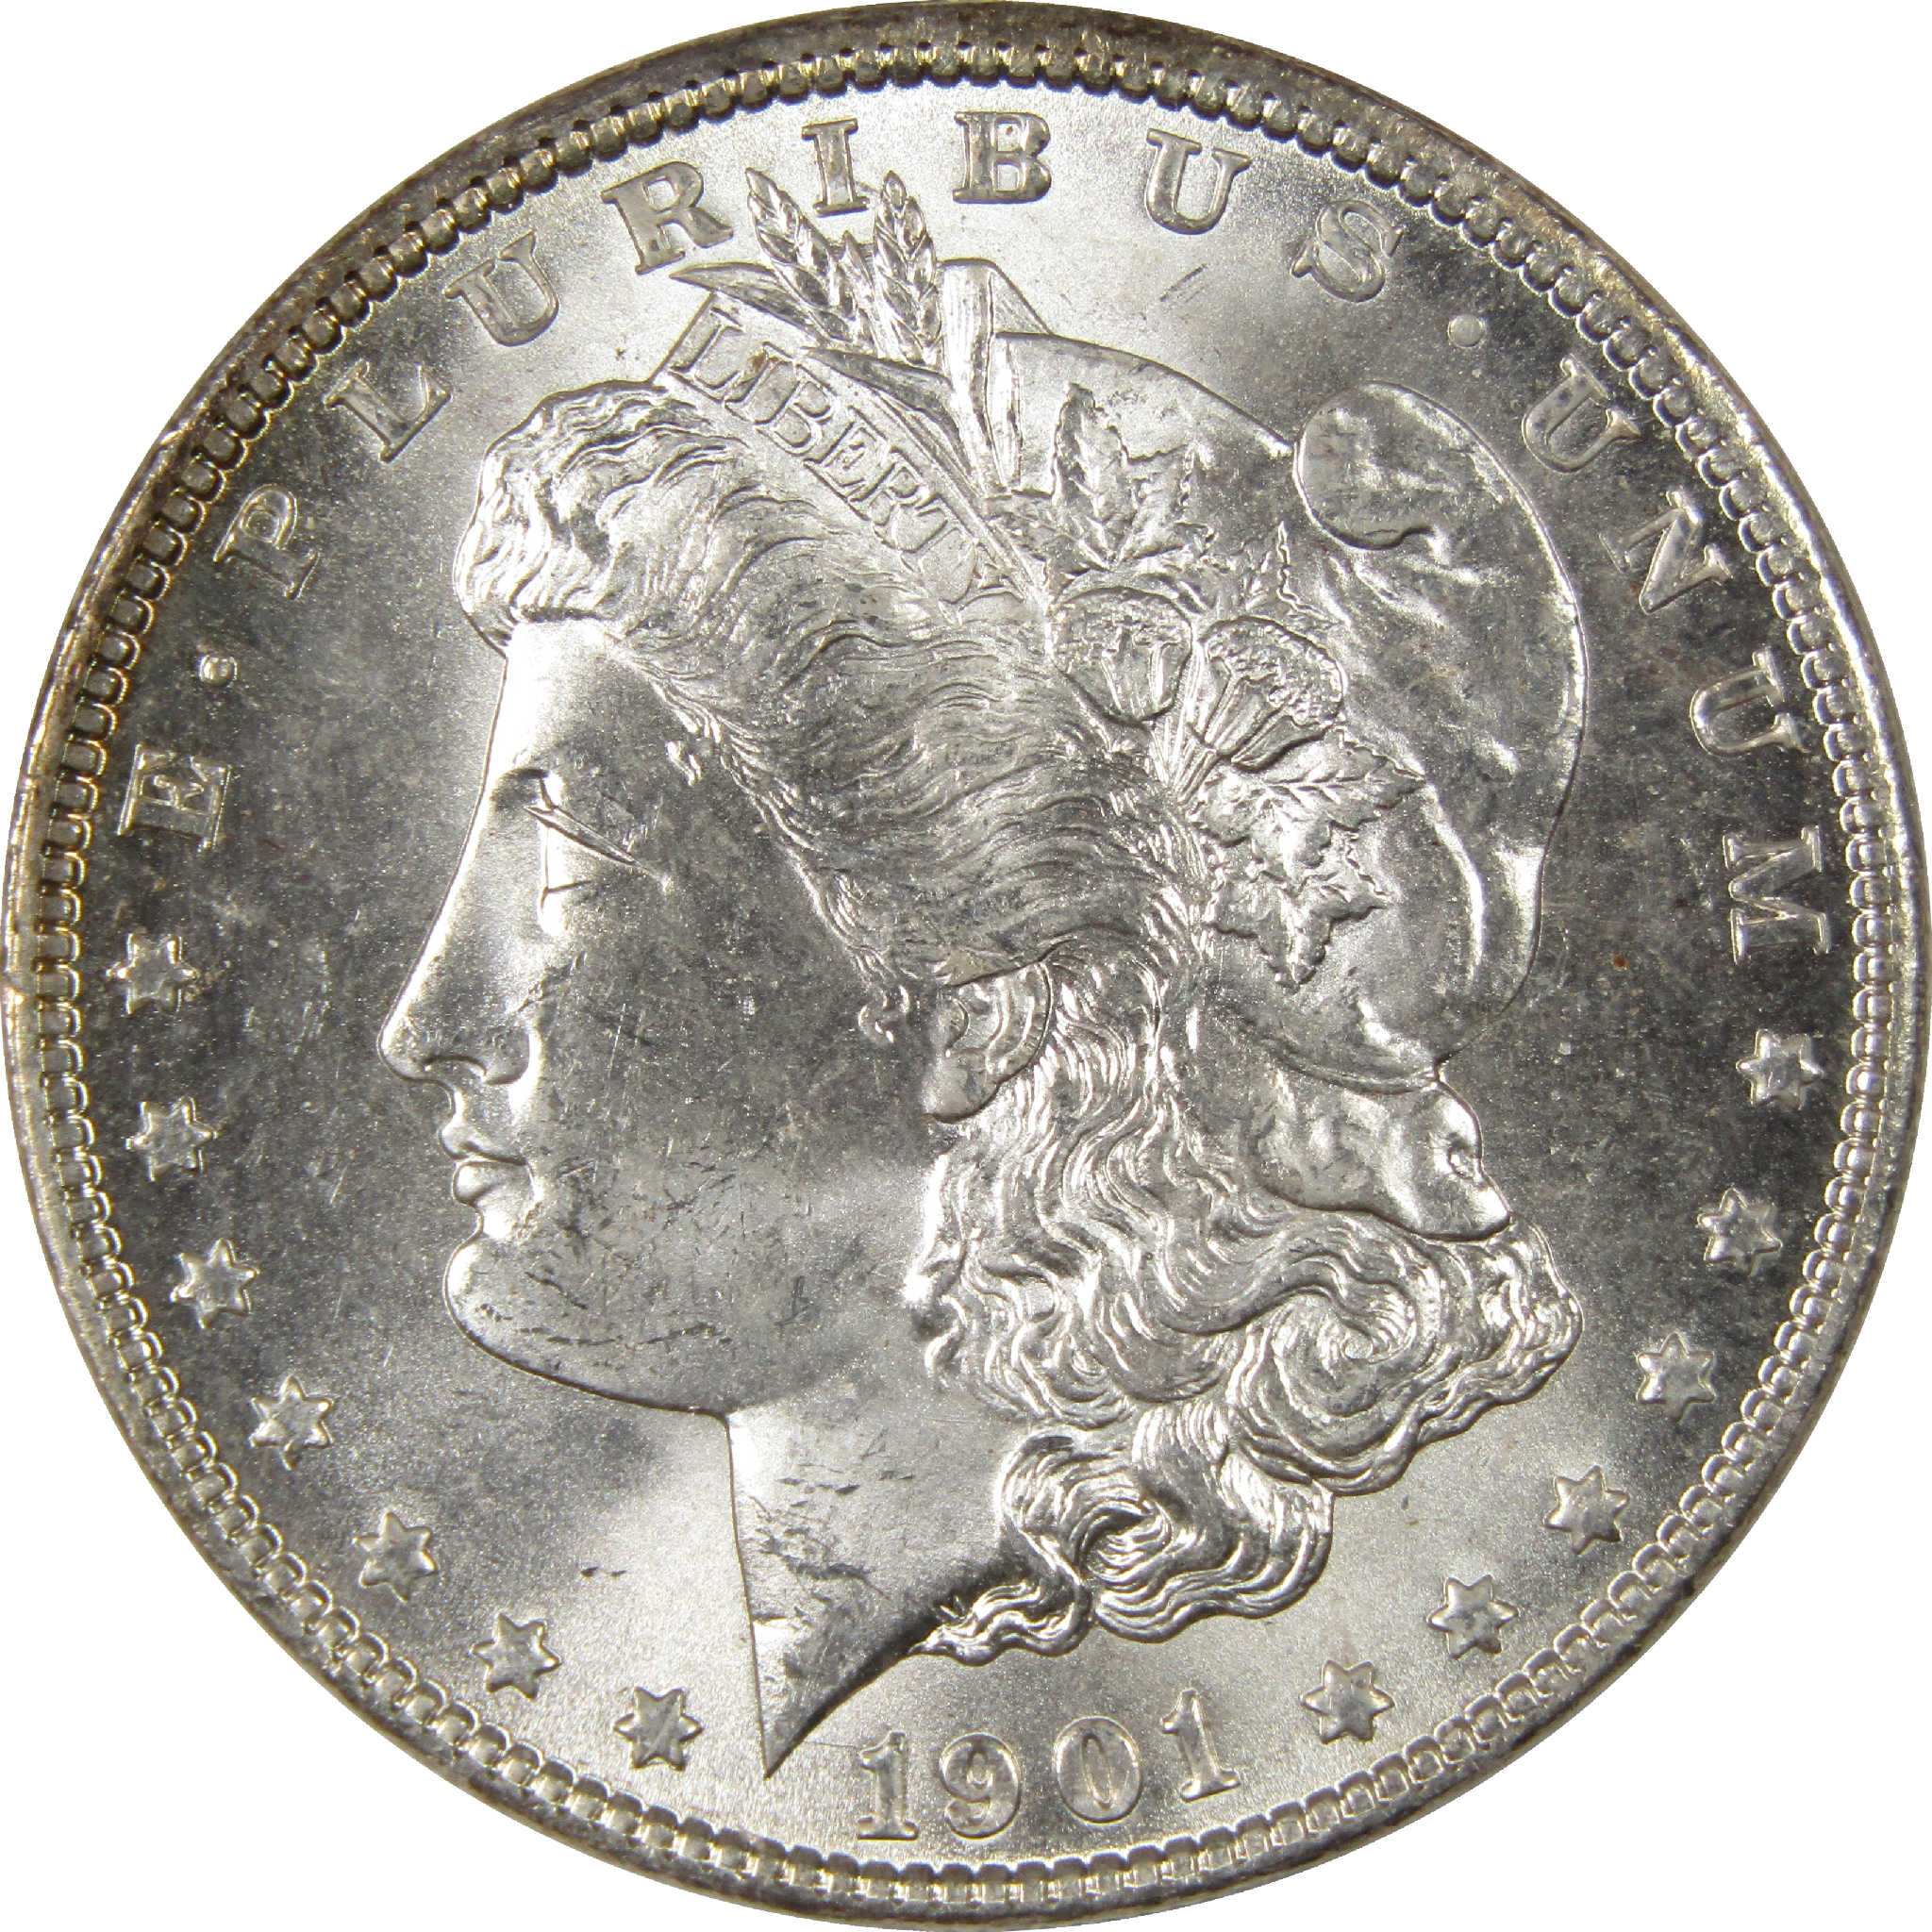 1901 O Morgan Dollar BU Choice Uncirculated Silver $1 Coin - Morgan coin - Morgan silver dollar - Morgan silver dollar for sale - Profile Coins &amp; Collectibles